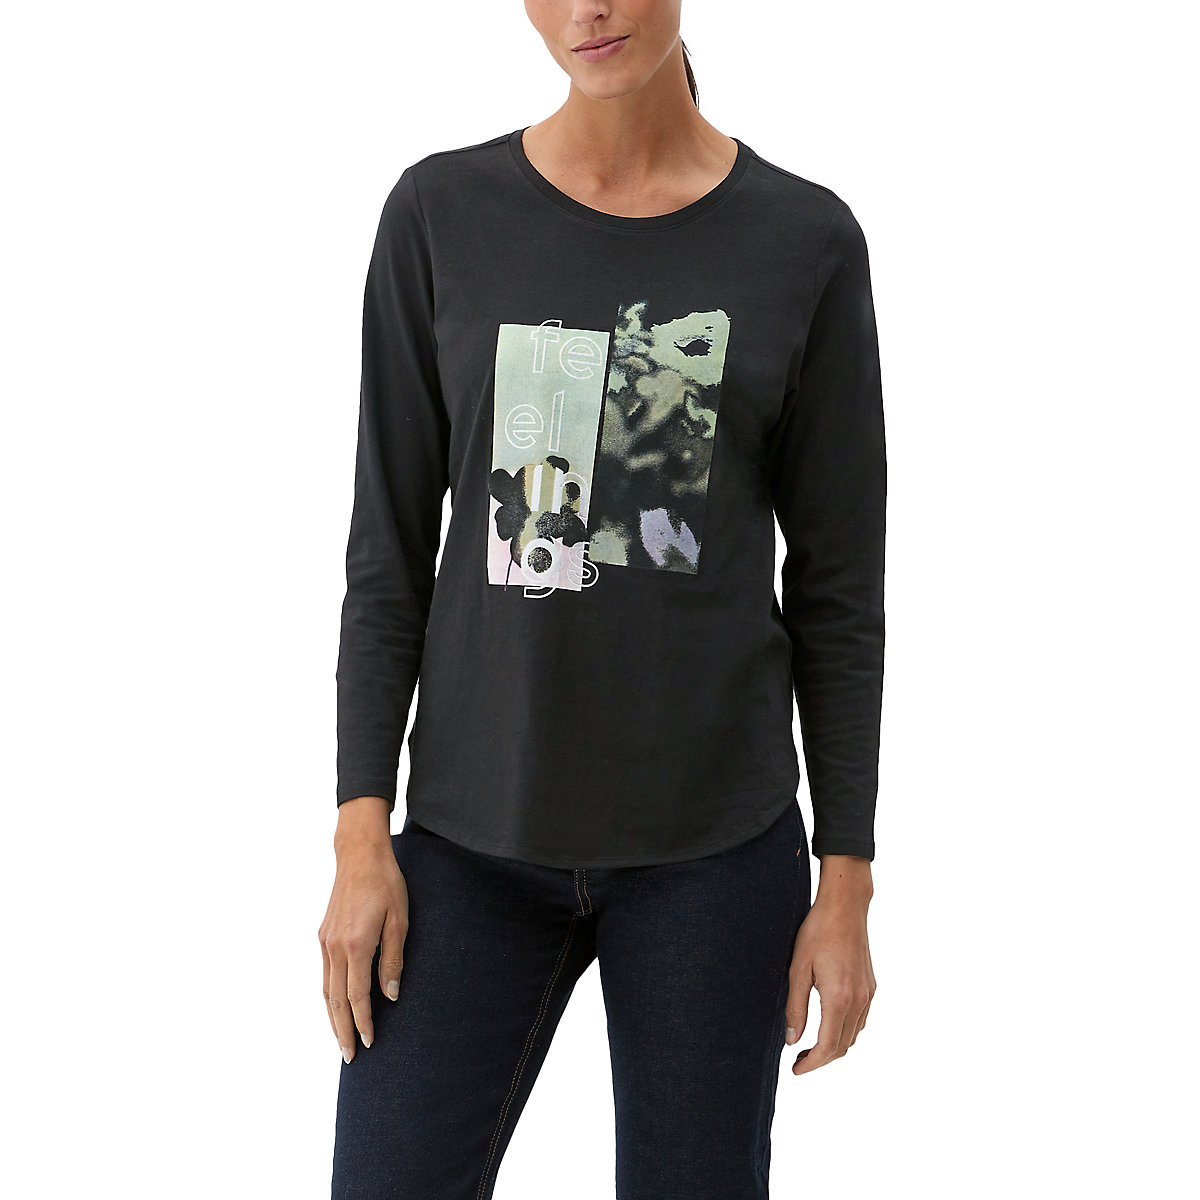 s.Oliver Baumwoll-Shirt mit Effektprint T-Shirts schwarz